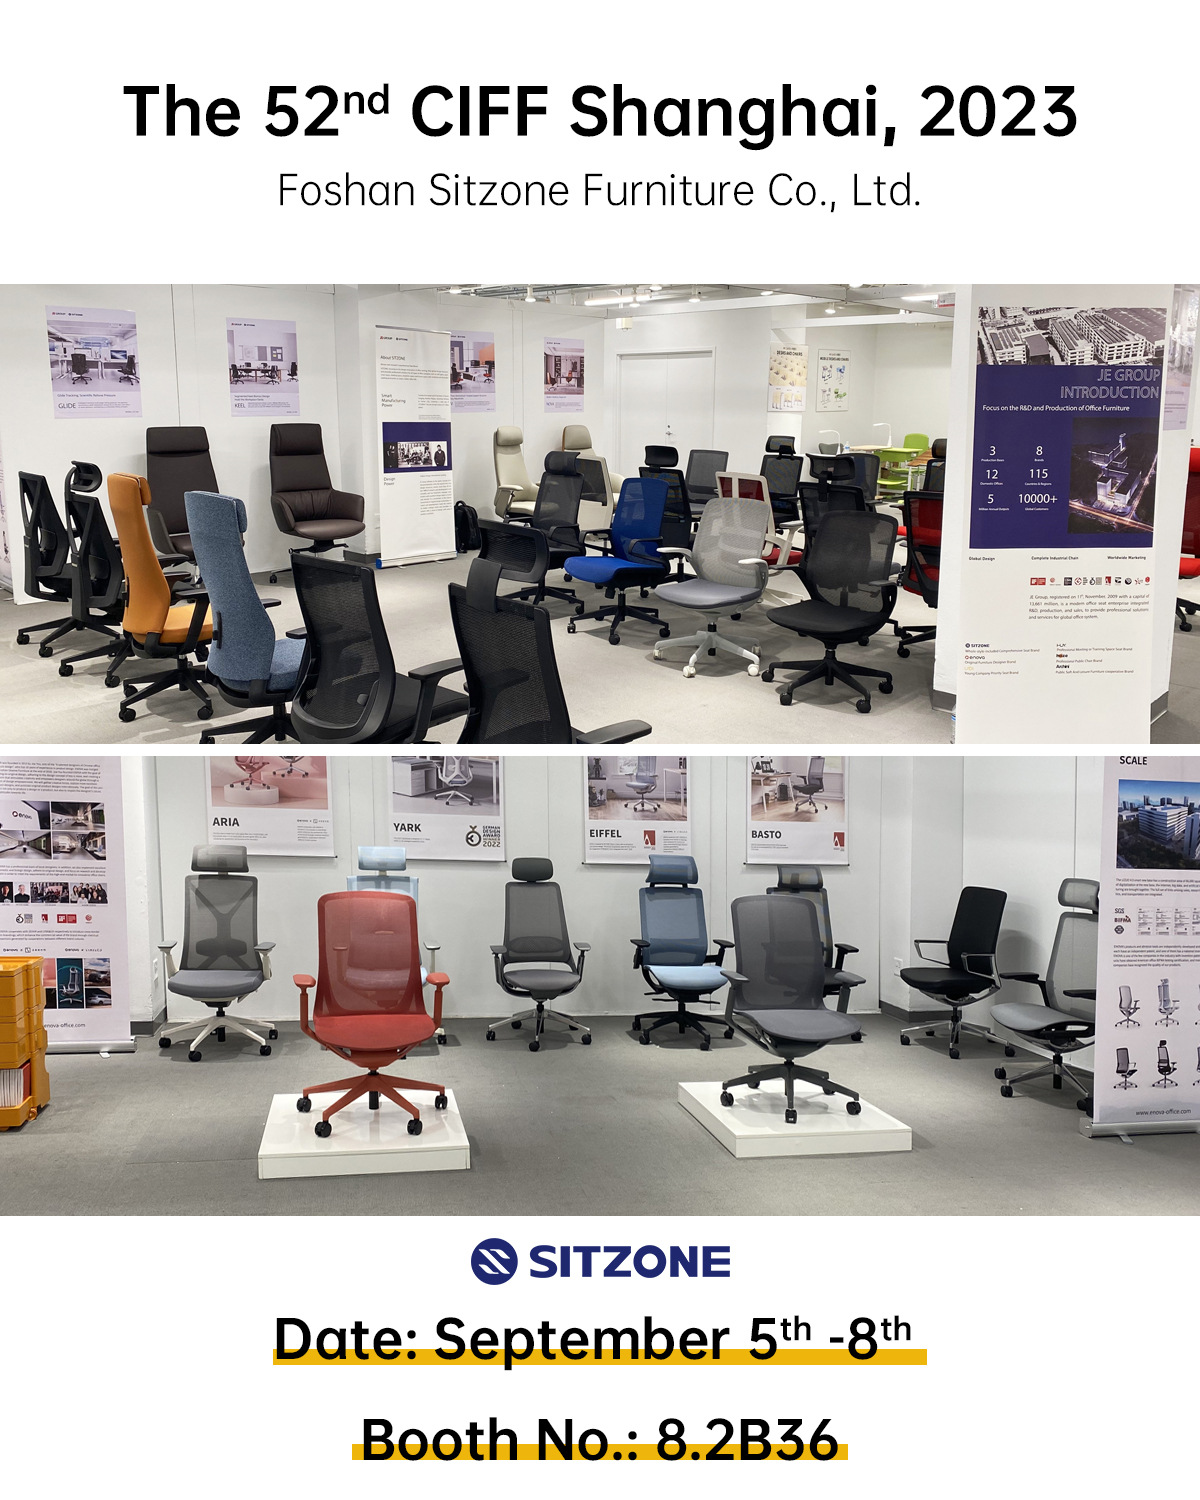 Δοκιμάστε τις νεοκυκλοφορημένες & υψηλής ποιότητας καρέκλες μας στο CIFF Shanghai 2023!